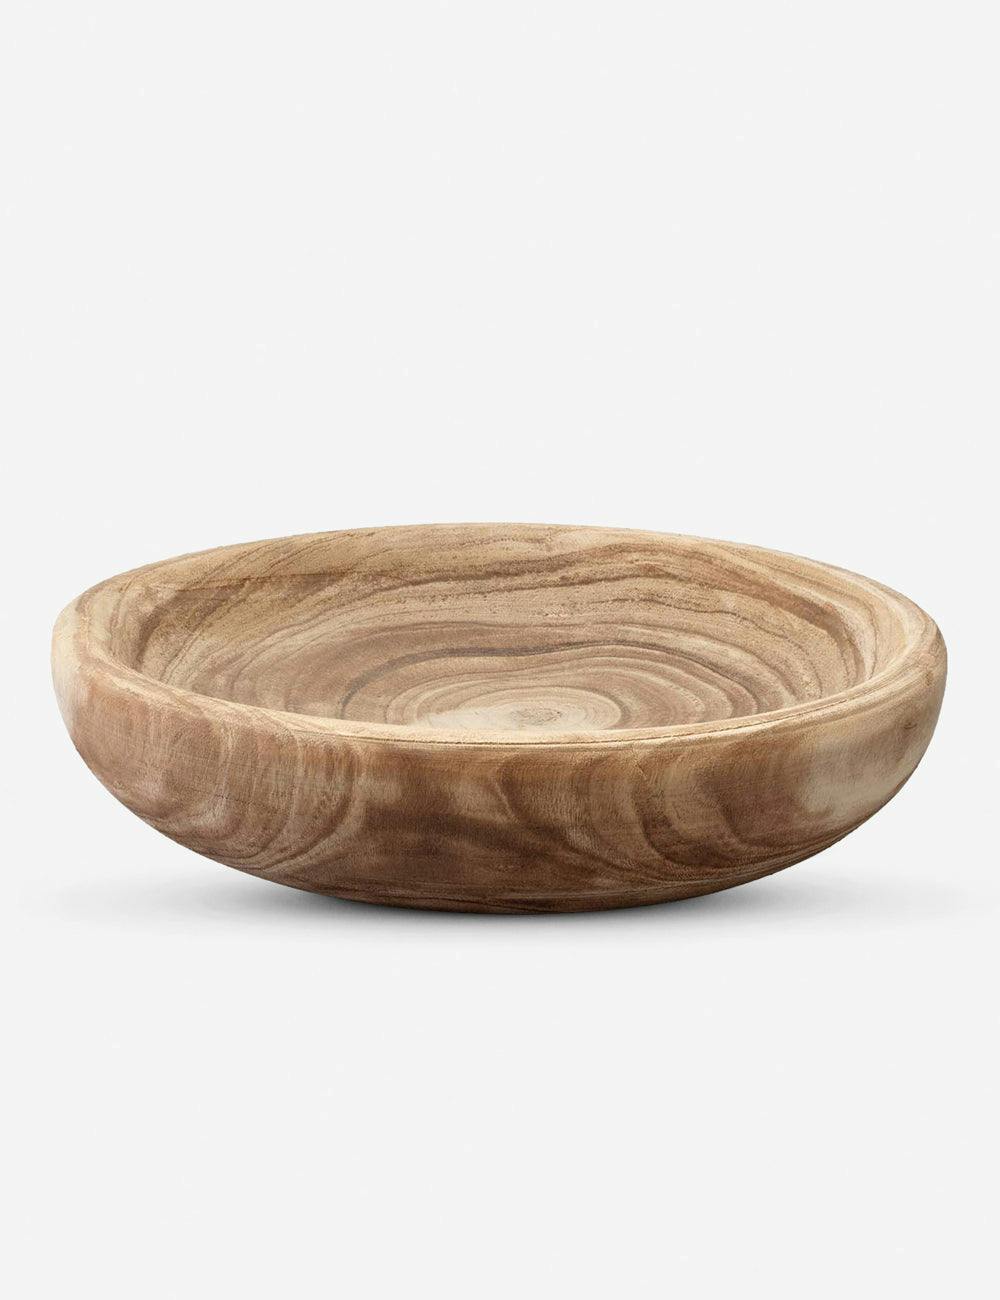 Sada Wooden Bowl - Small